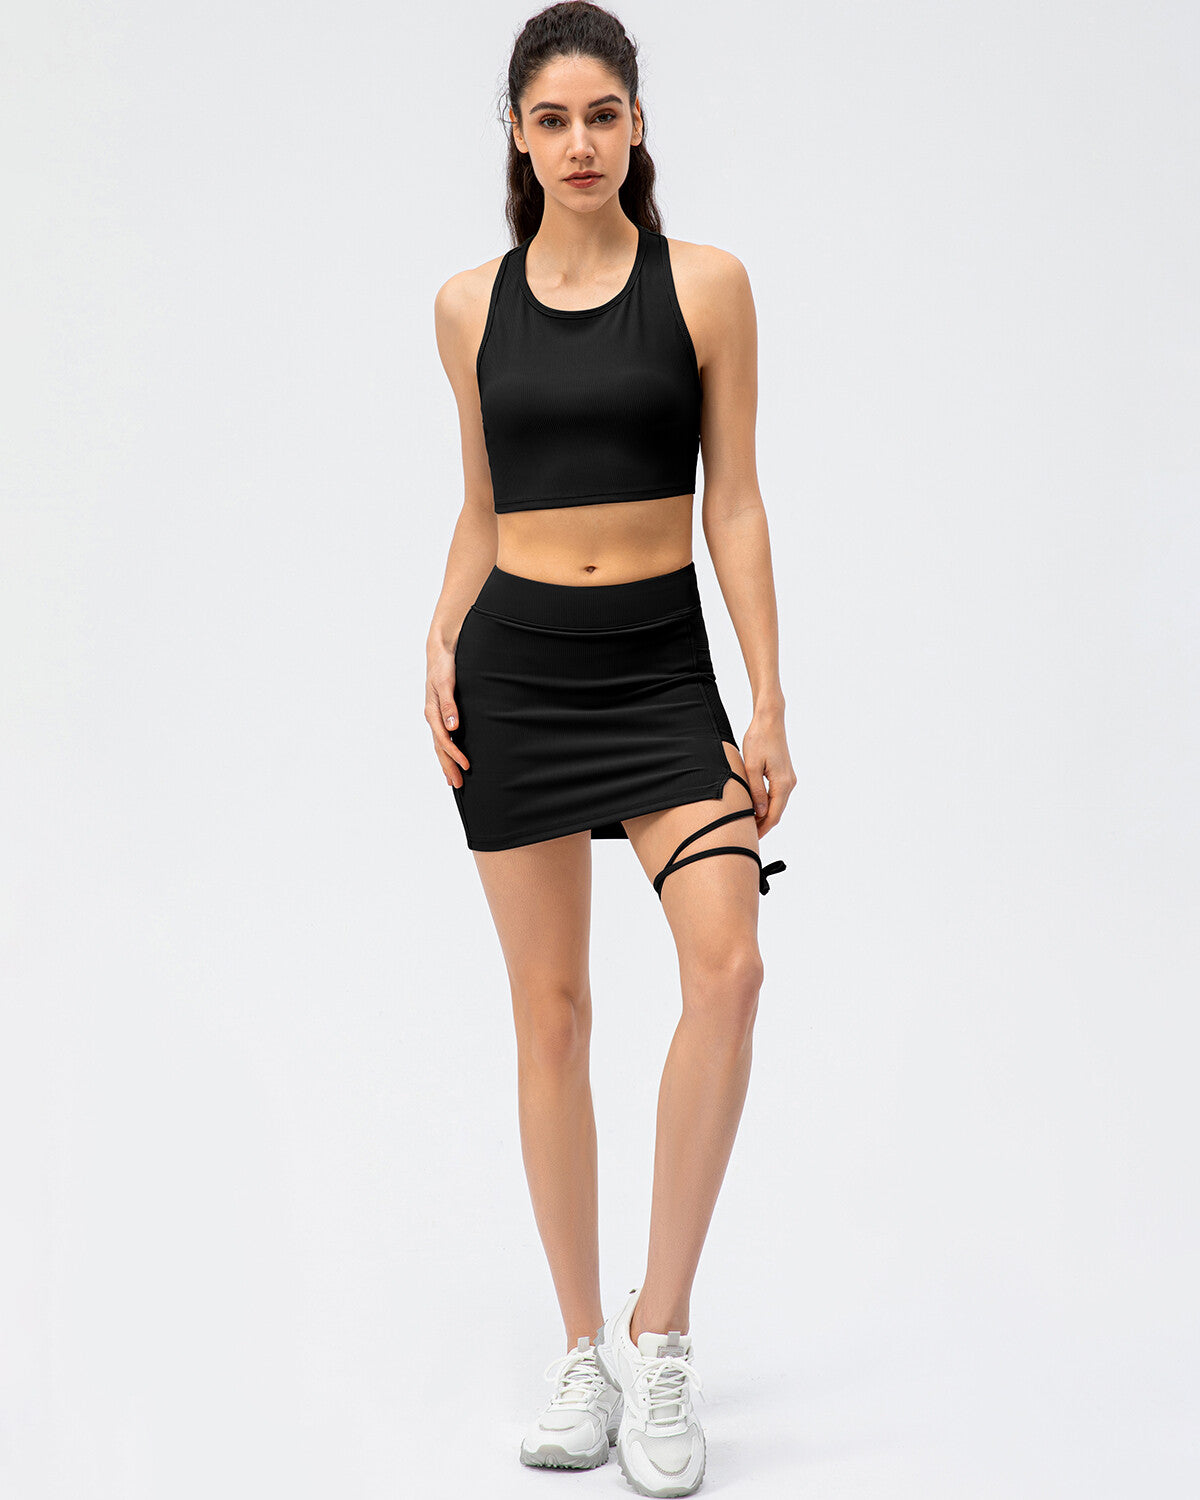 Sloane Skirt - Black